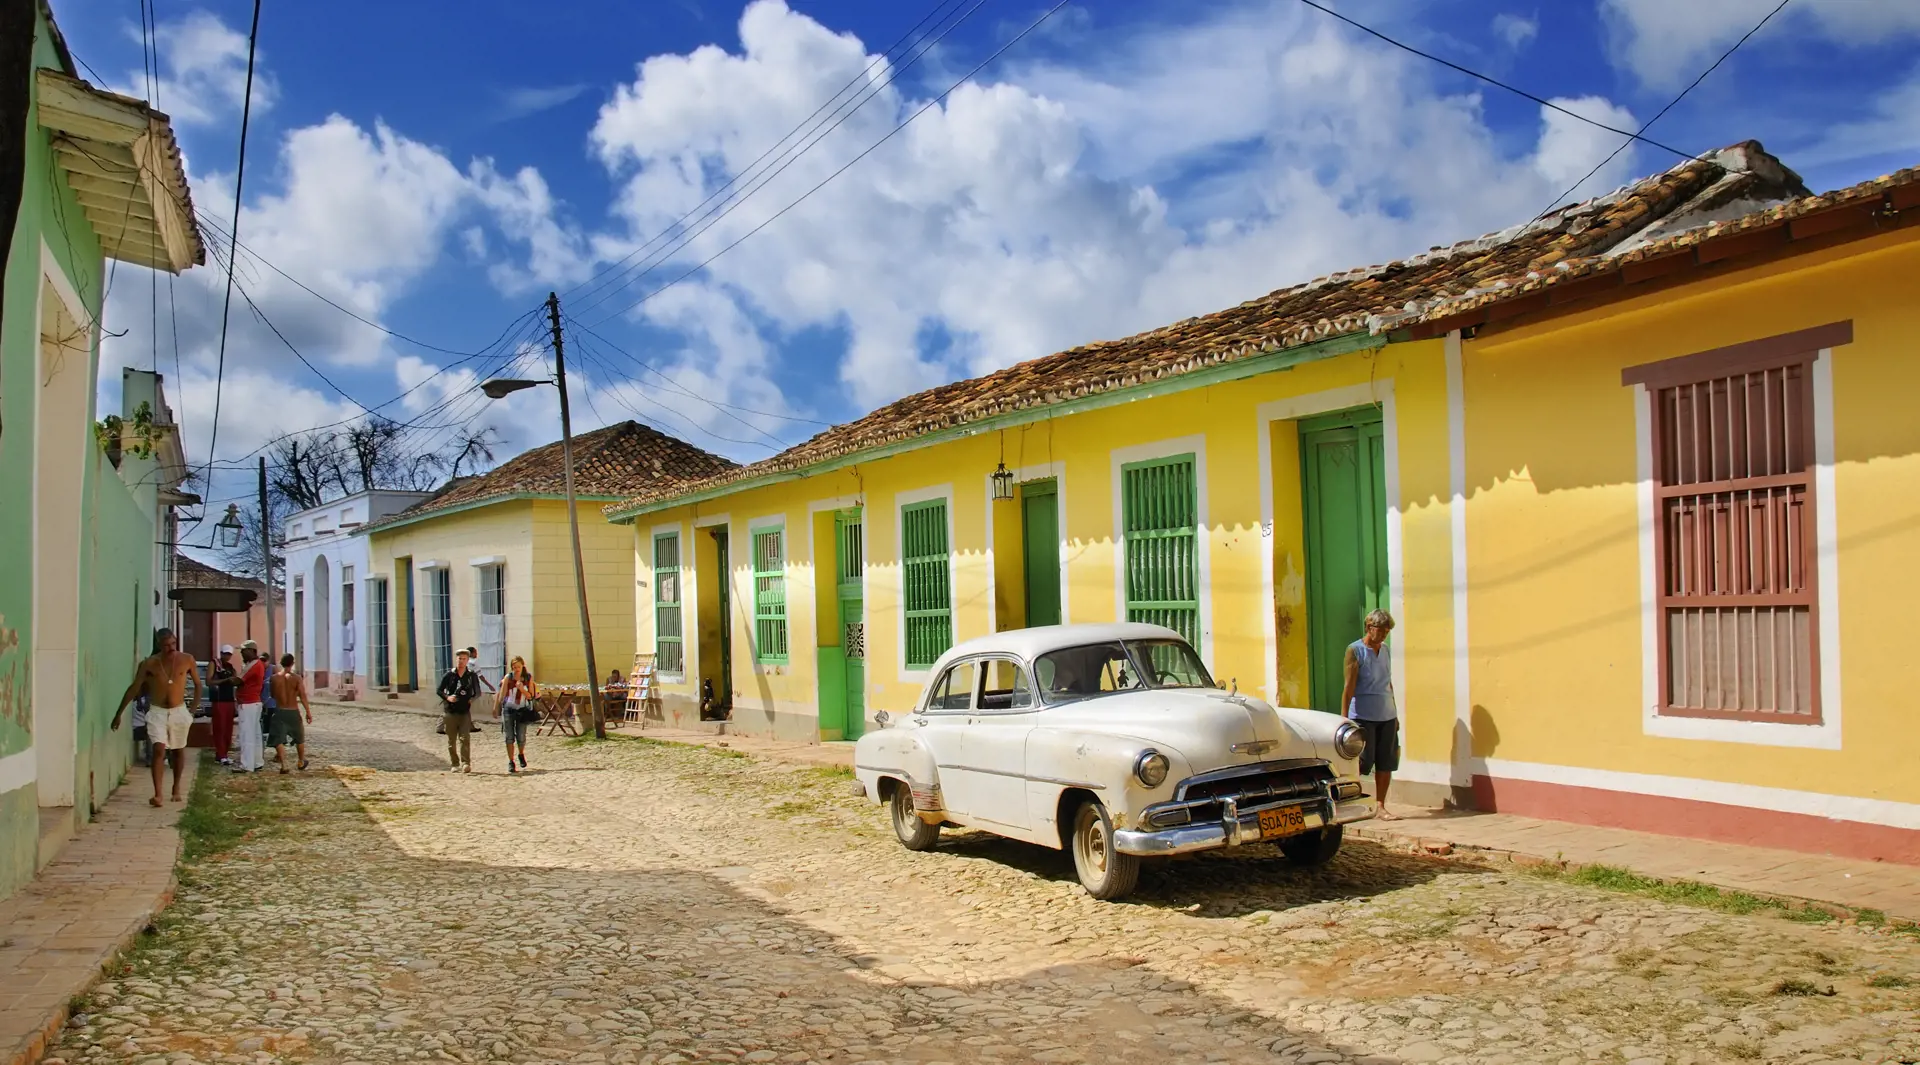 TRINIDAD - mange af de gamle huse i Trinidad er indrettede som stemningsfulde pensionater og små gallerier, Check Point Travel